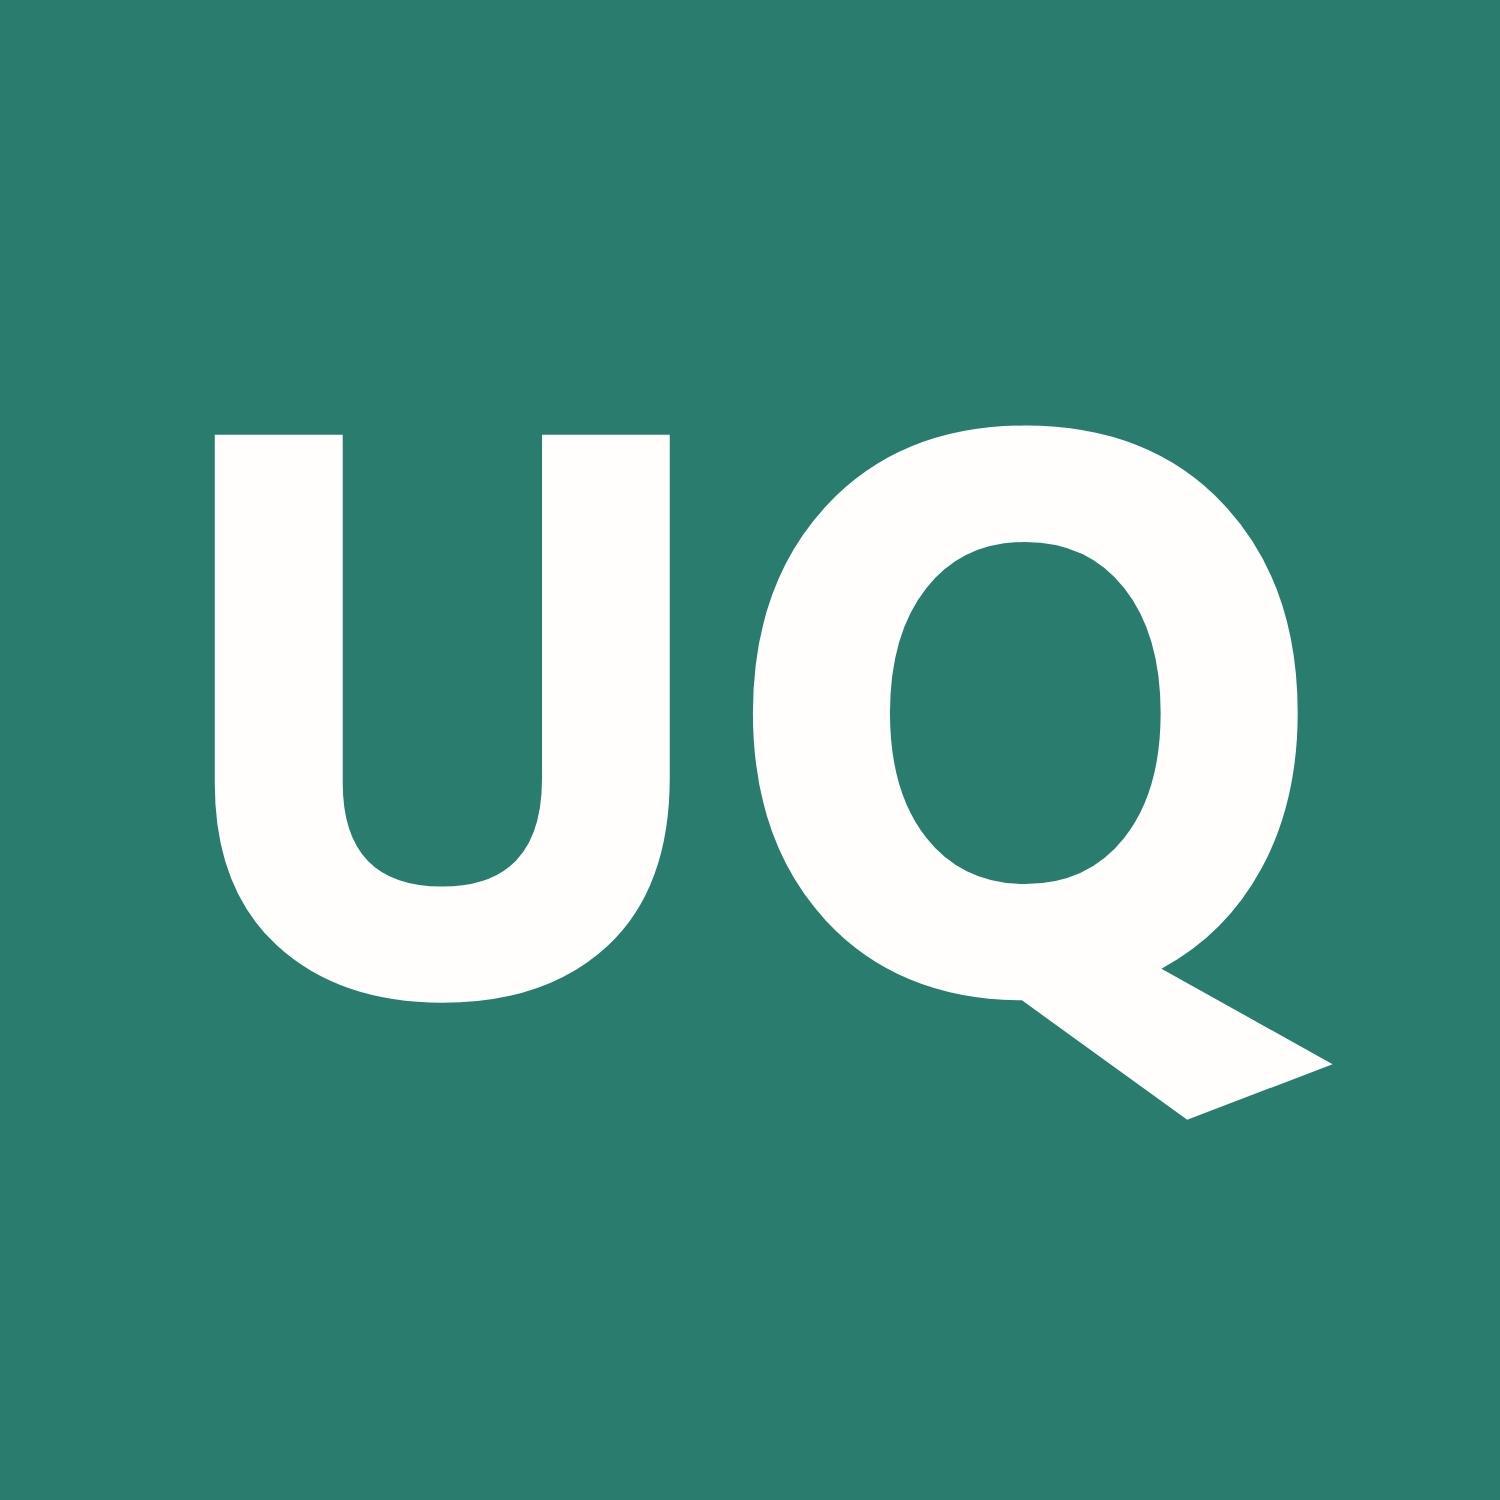 Ubiquest Logo